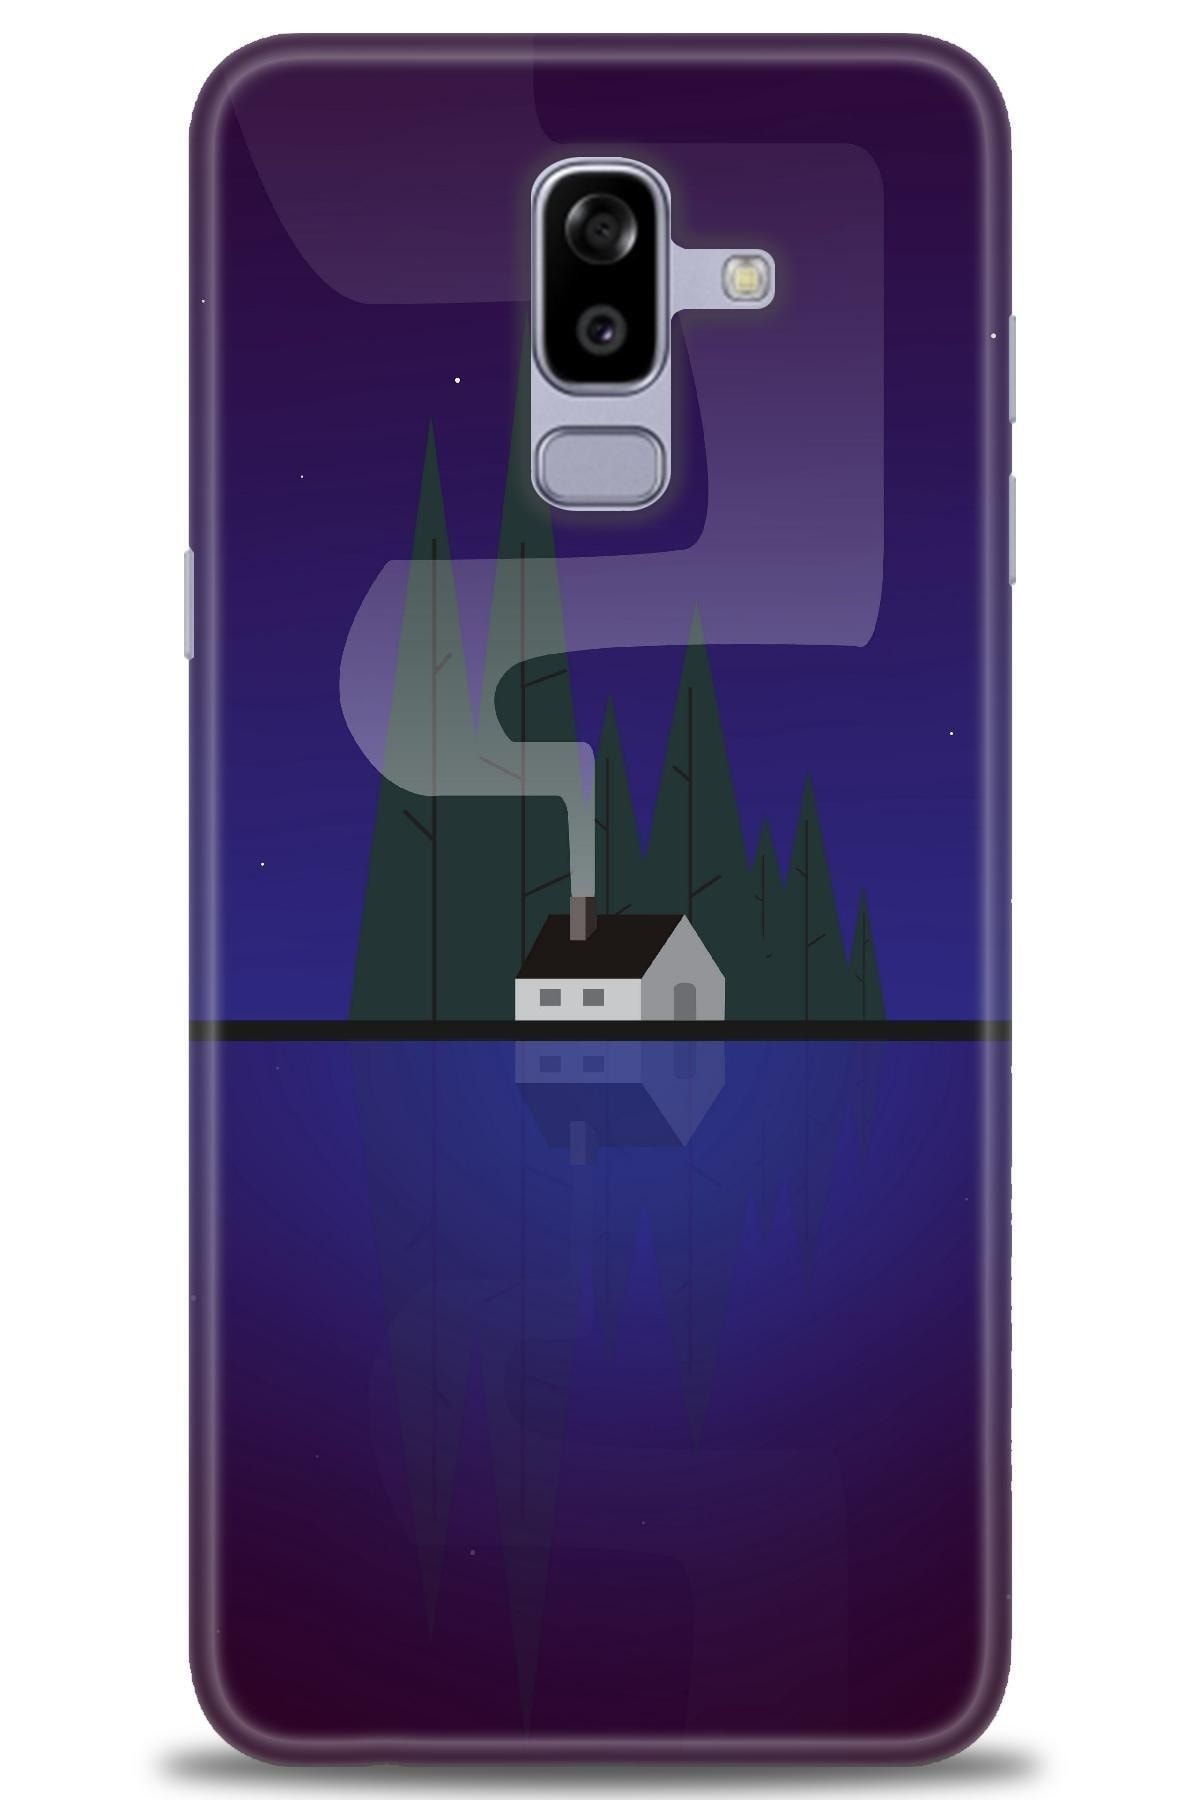 Noprin Samsung Galaxy A6 Plus 2018 Kılıf Hd Baskılı Kılıf - House Lake + Nano Micro Ekran Koruyucu